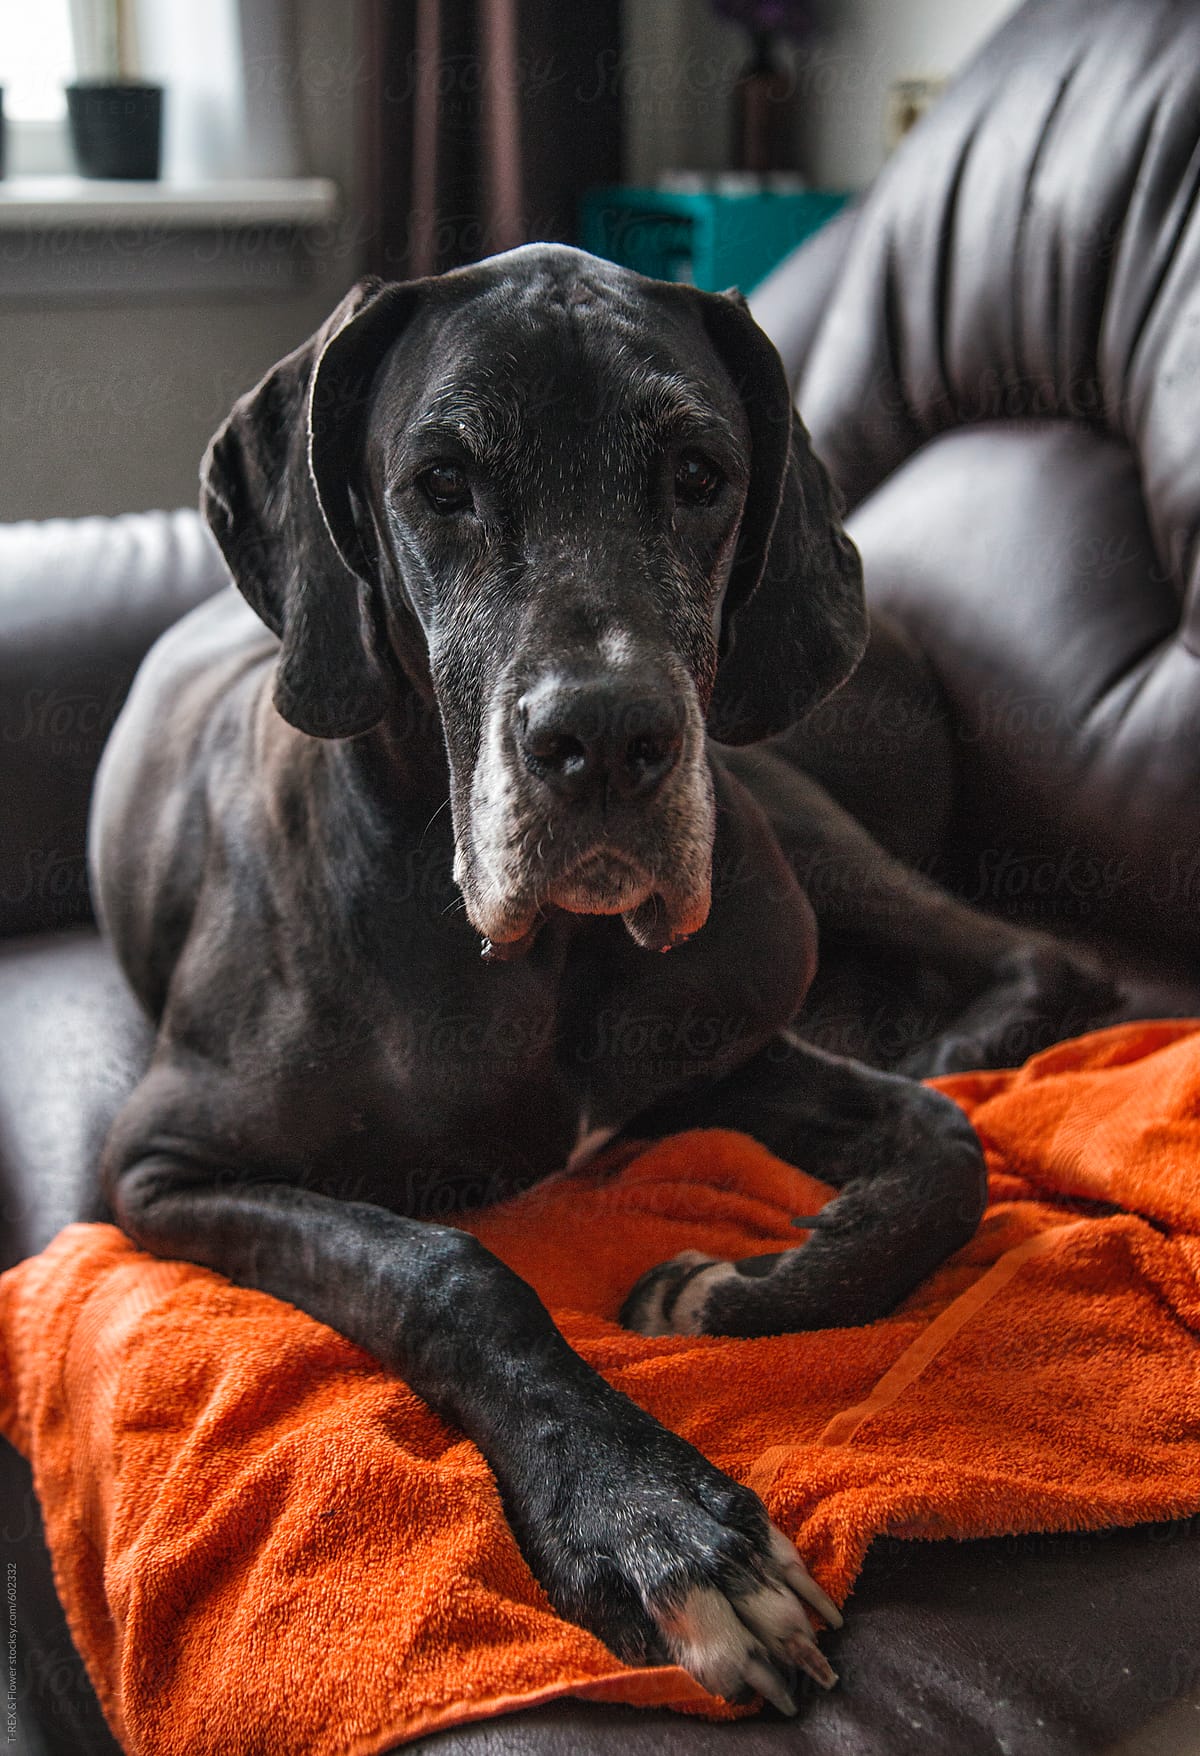 Aged Dane Dog lying on sofa with orange towel